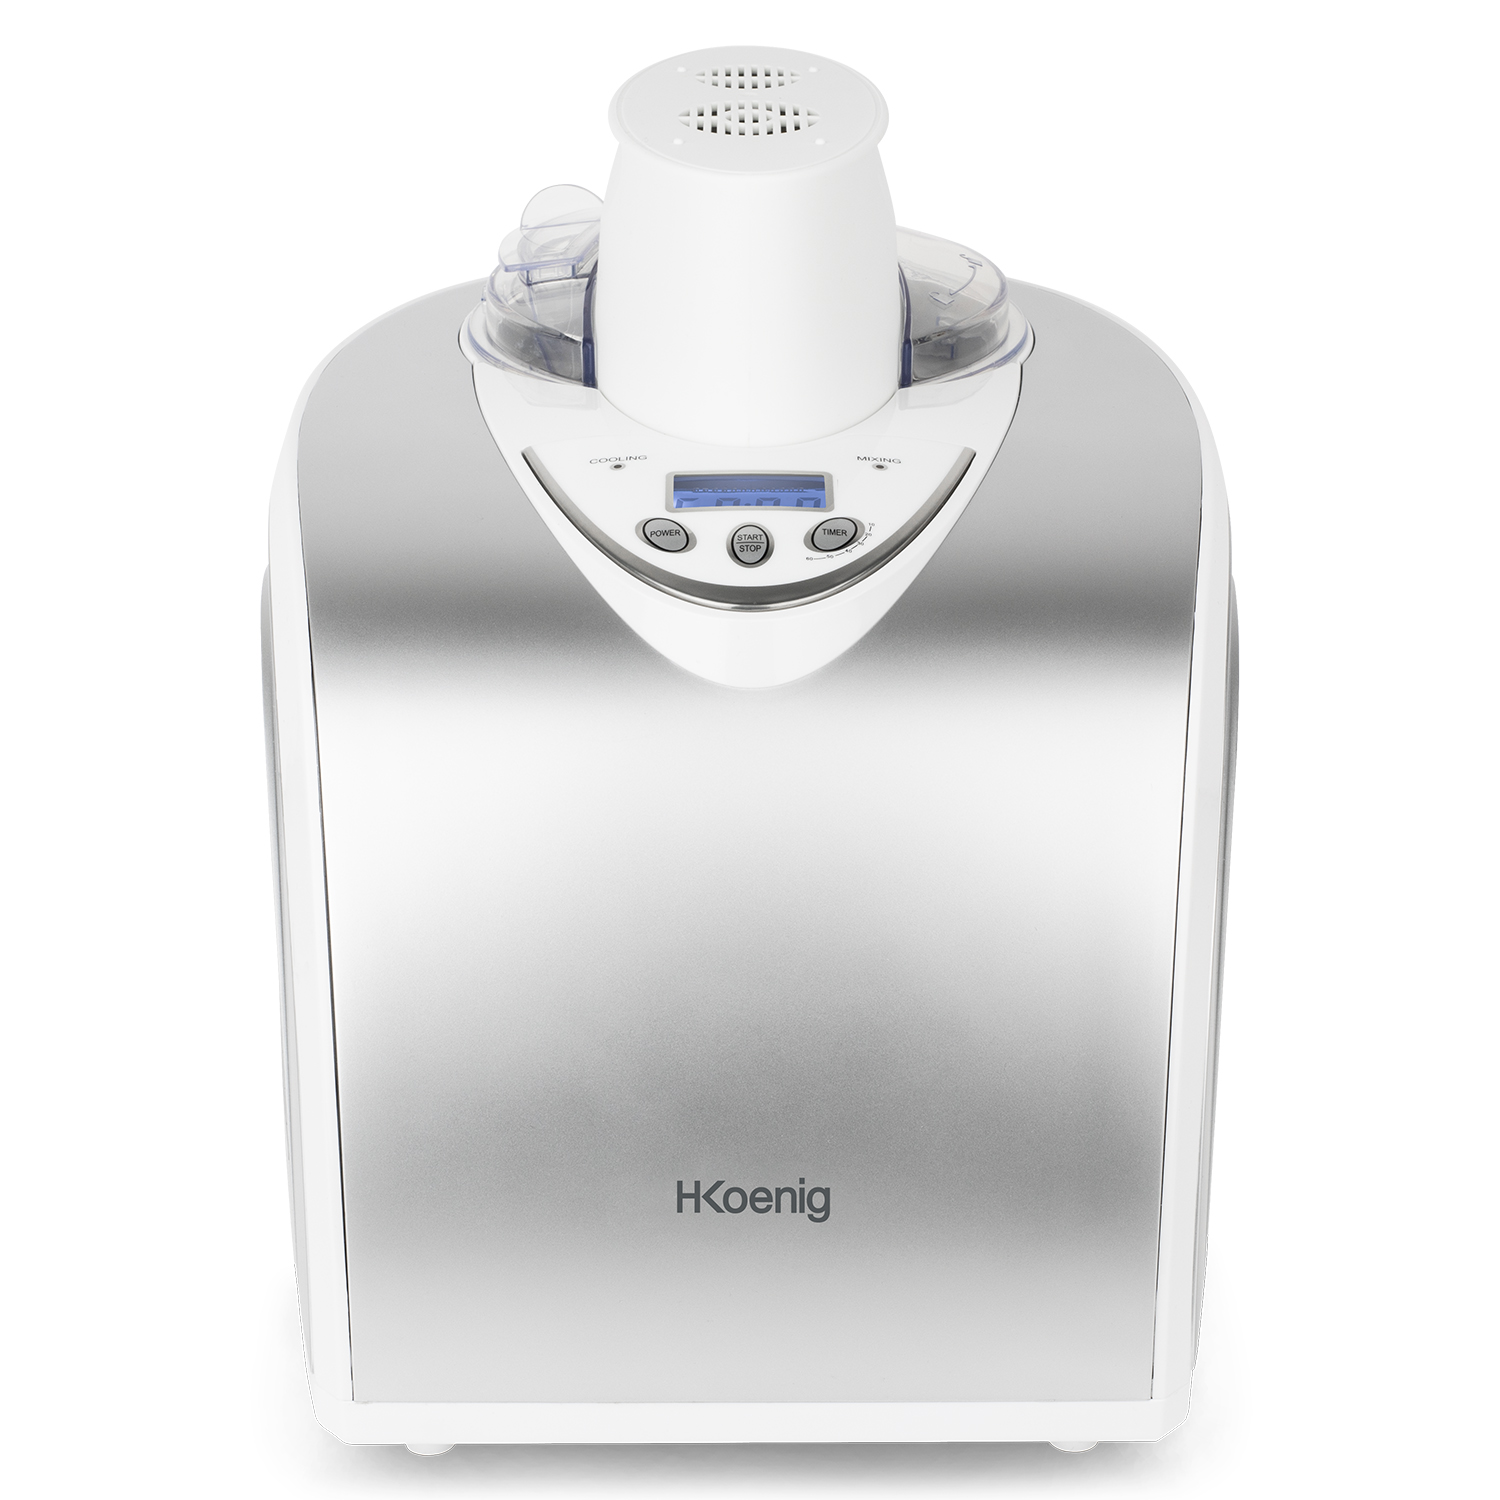 Joghurt, professionelle L 1 HF180 Eismaschine (135 Eis, Frozen Sorbet Silber) / Eiscrememaschine Watt, W H.KOENIG / Kühlfunktion H.Koenig / / 135